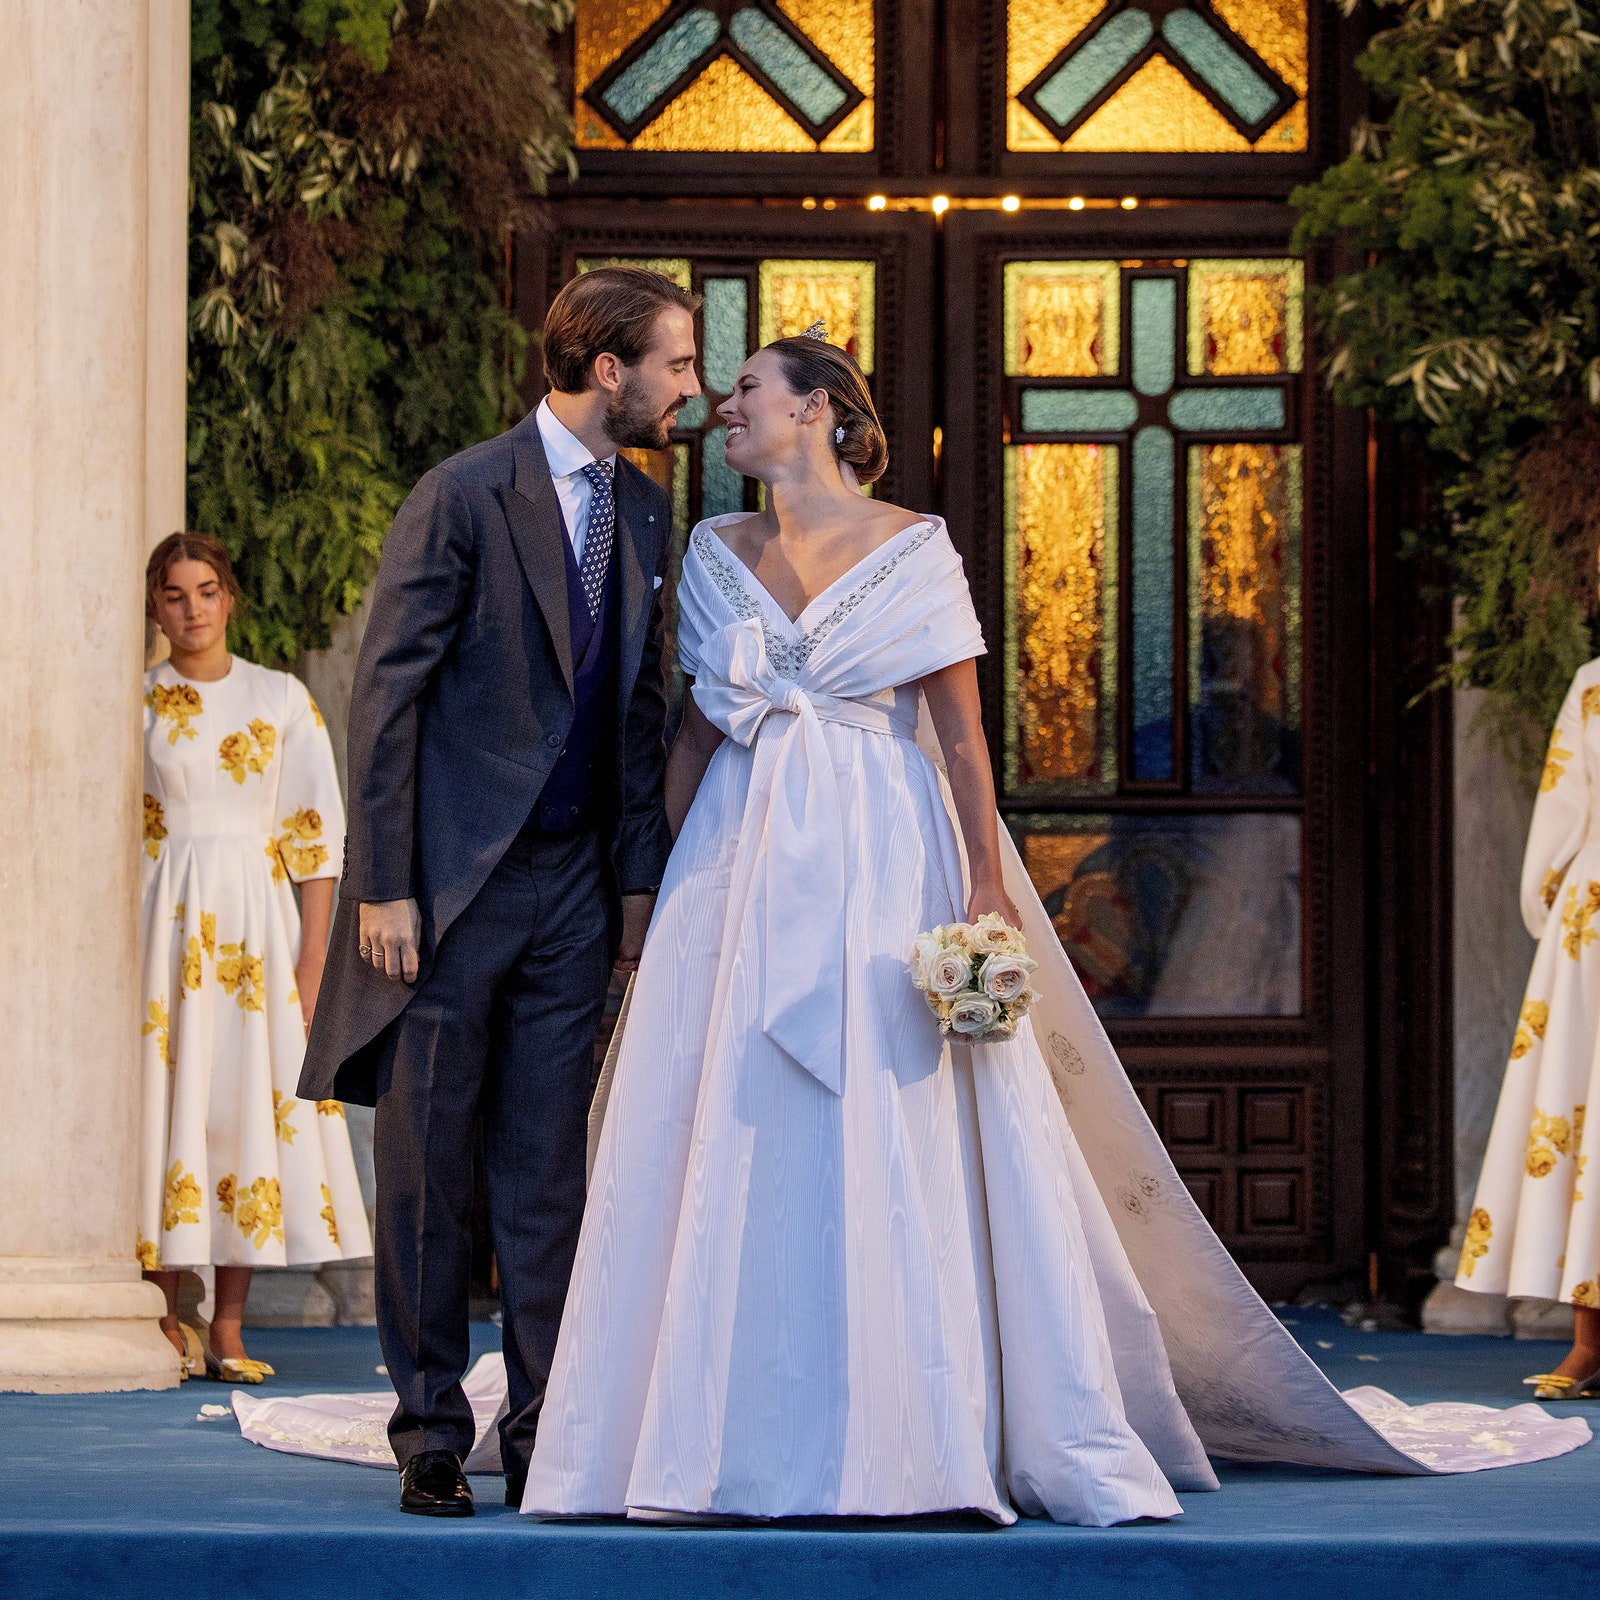 Взгляните на фотографии со свадьбы крестника принцессы Дианы принца Филиппоса и Нины Флор